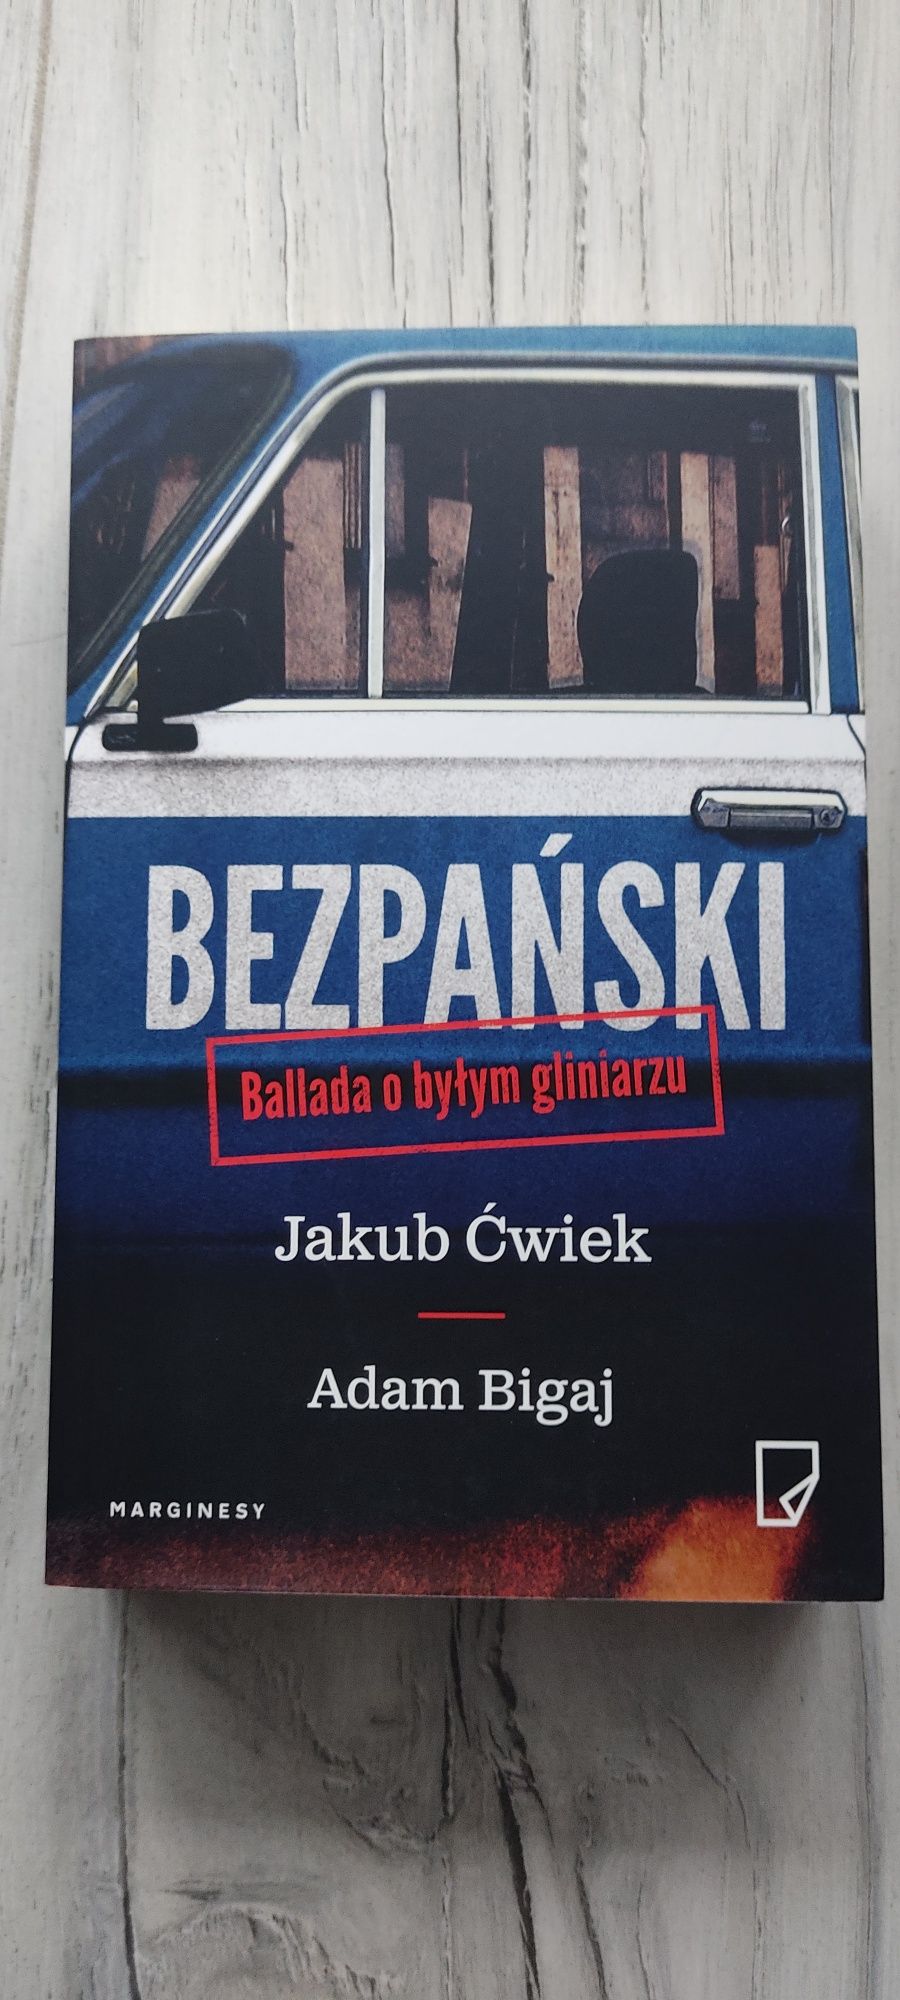 Książka Bezpański - ballada o byłym gliniarzu